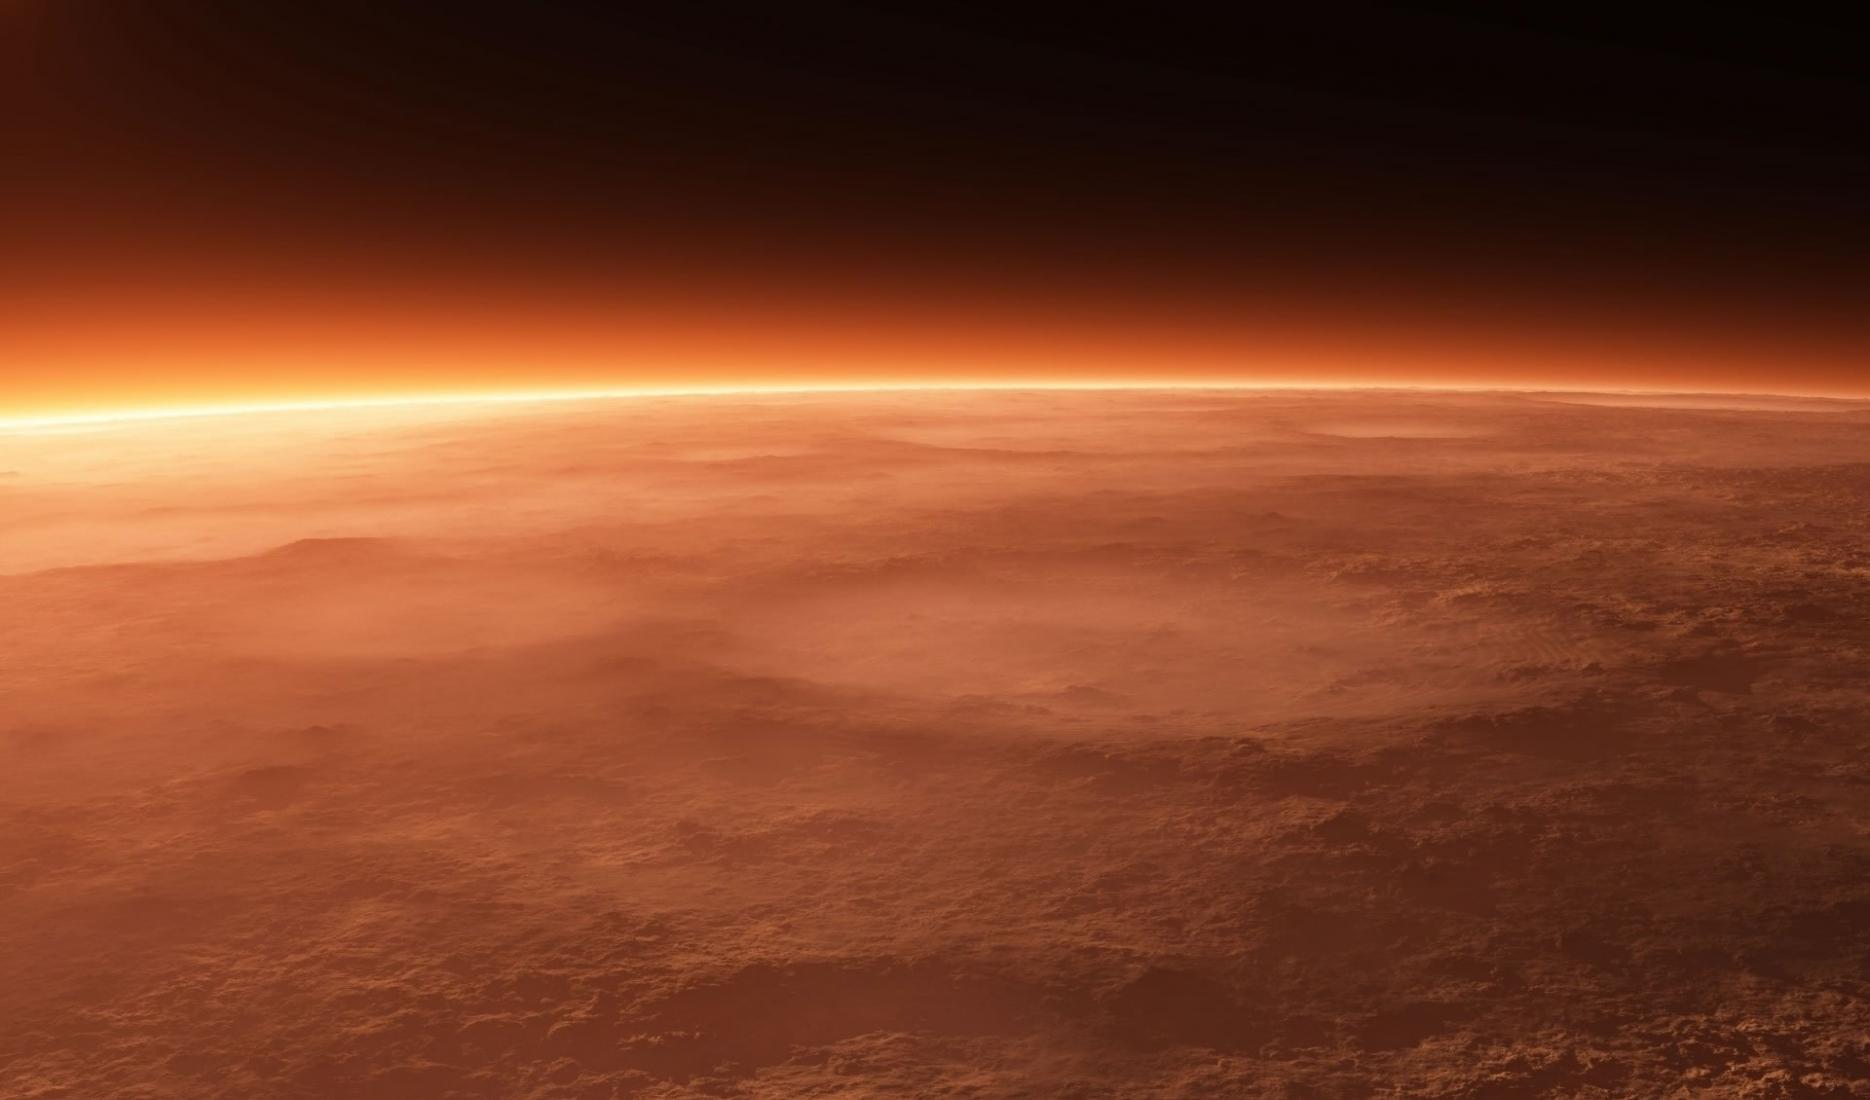 火星大气的一氧化碳可能维持了火星上的微生物群落